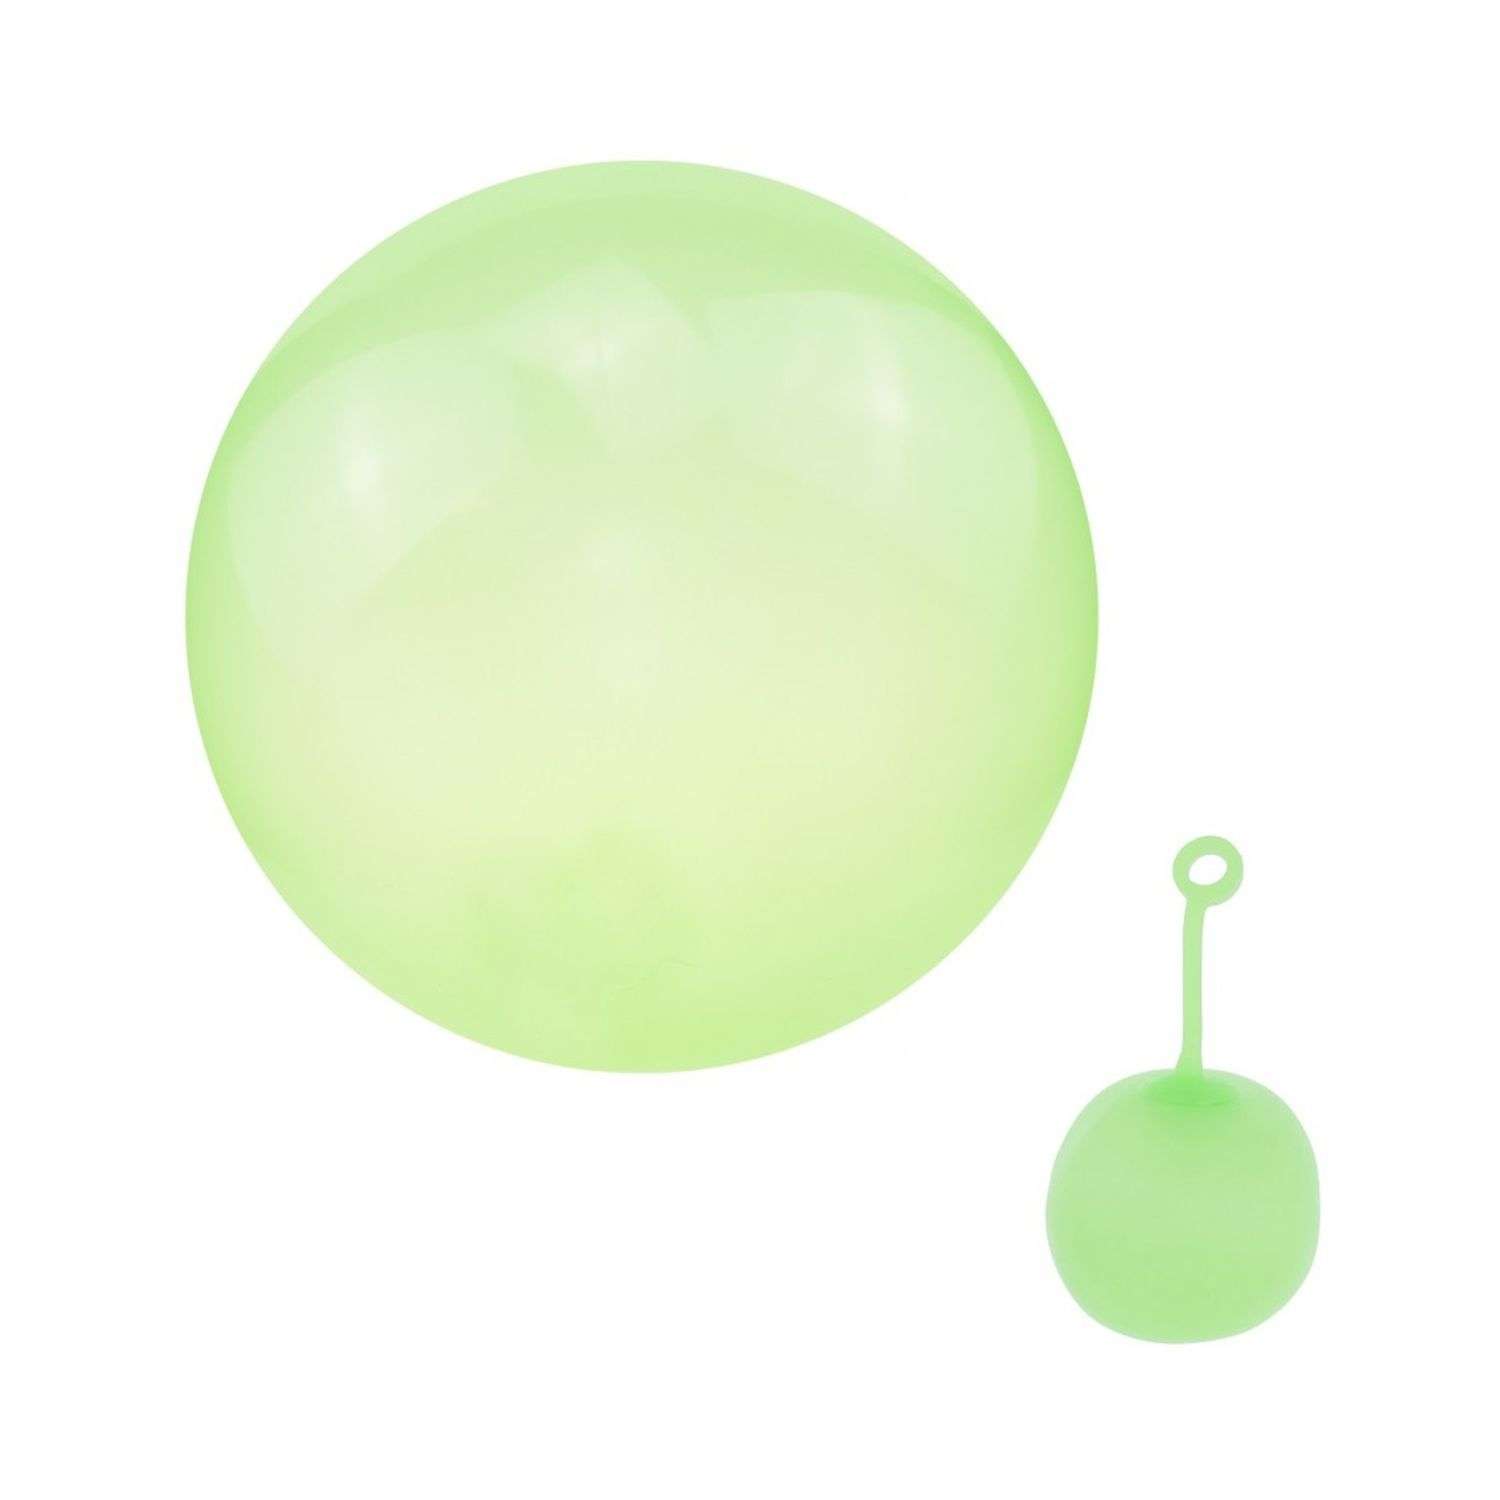 Суперпрочный надувной шар Seichi 35 см зеленый - фото 2